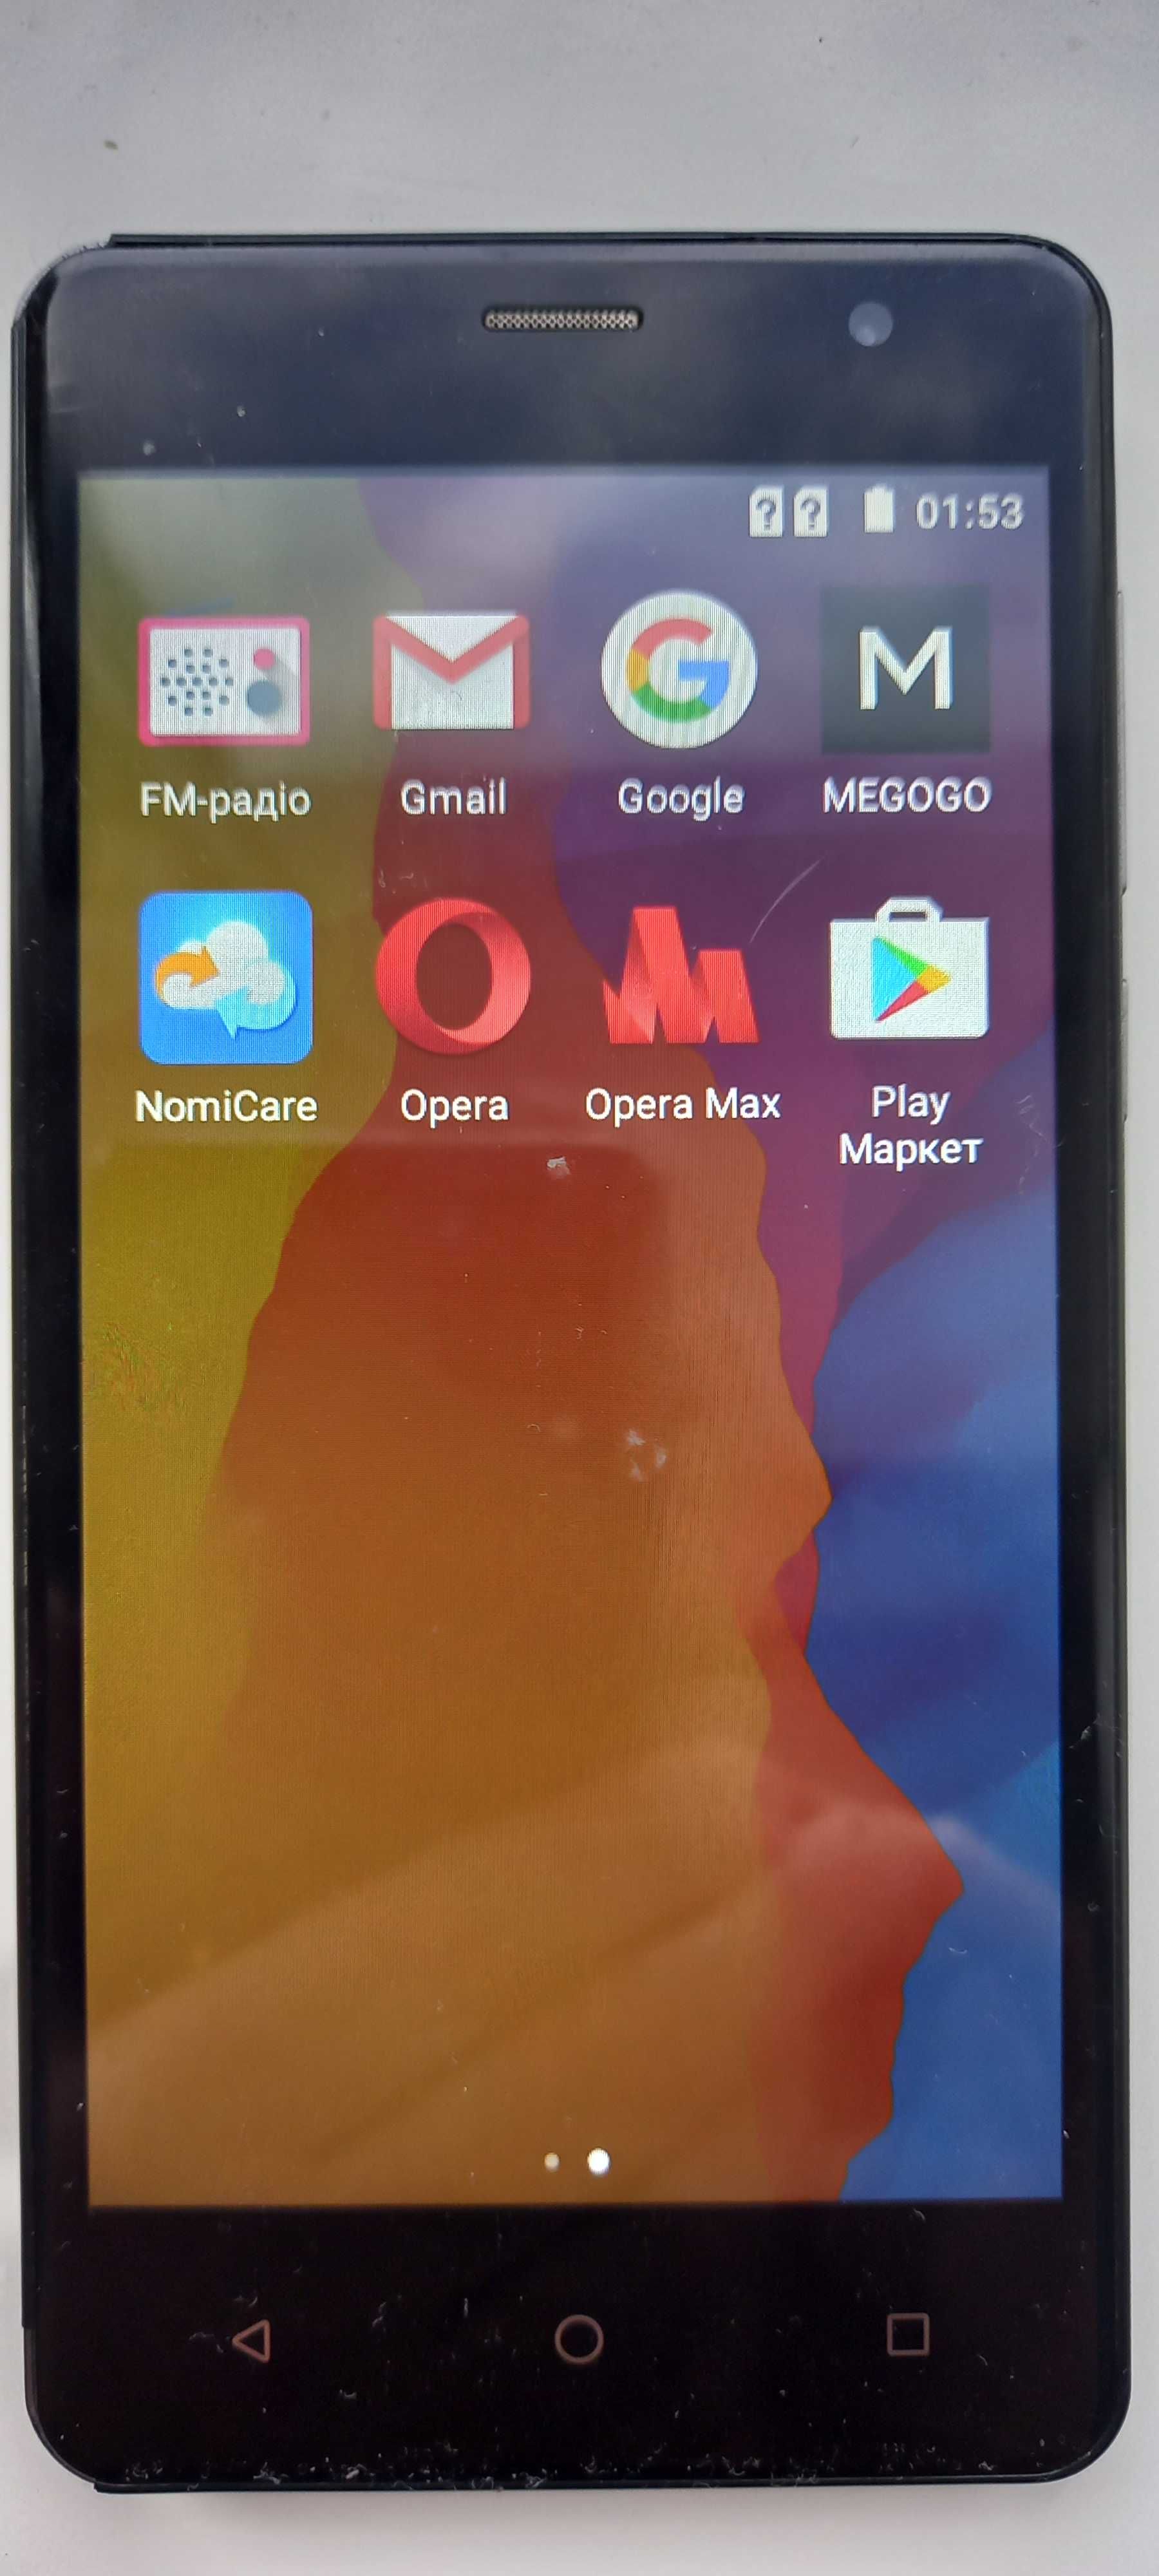 Смартфон NOMI i5010